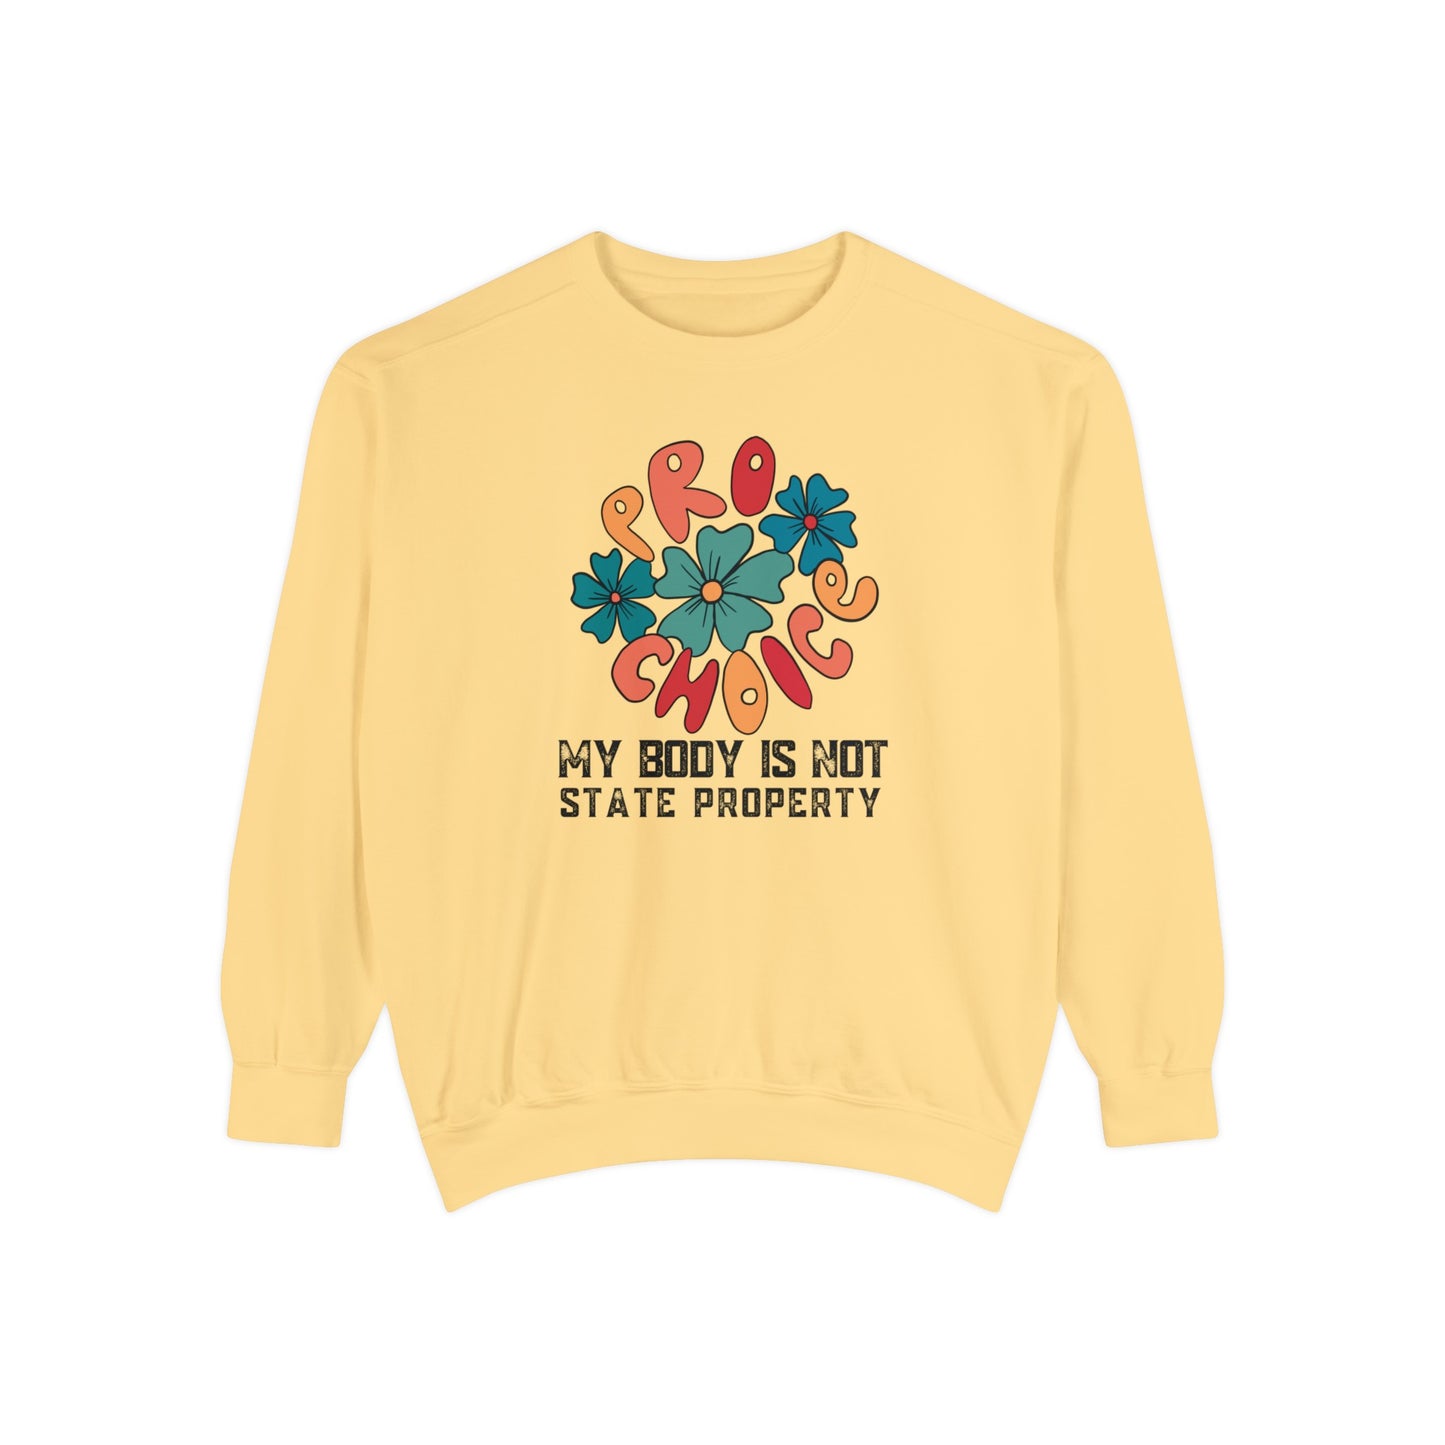 Butter color CC 1566 pro-choice sweatshirt